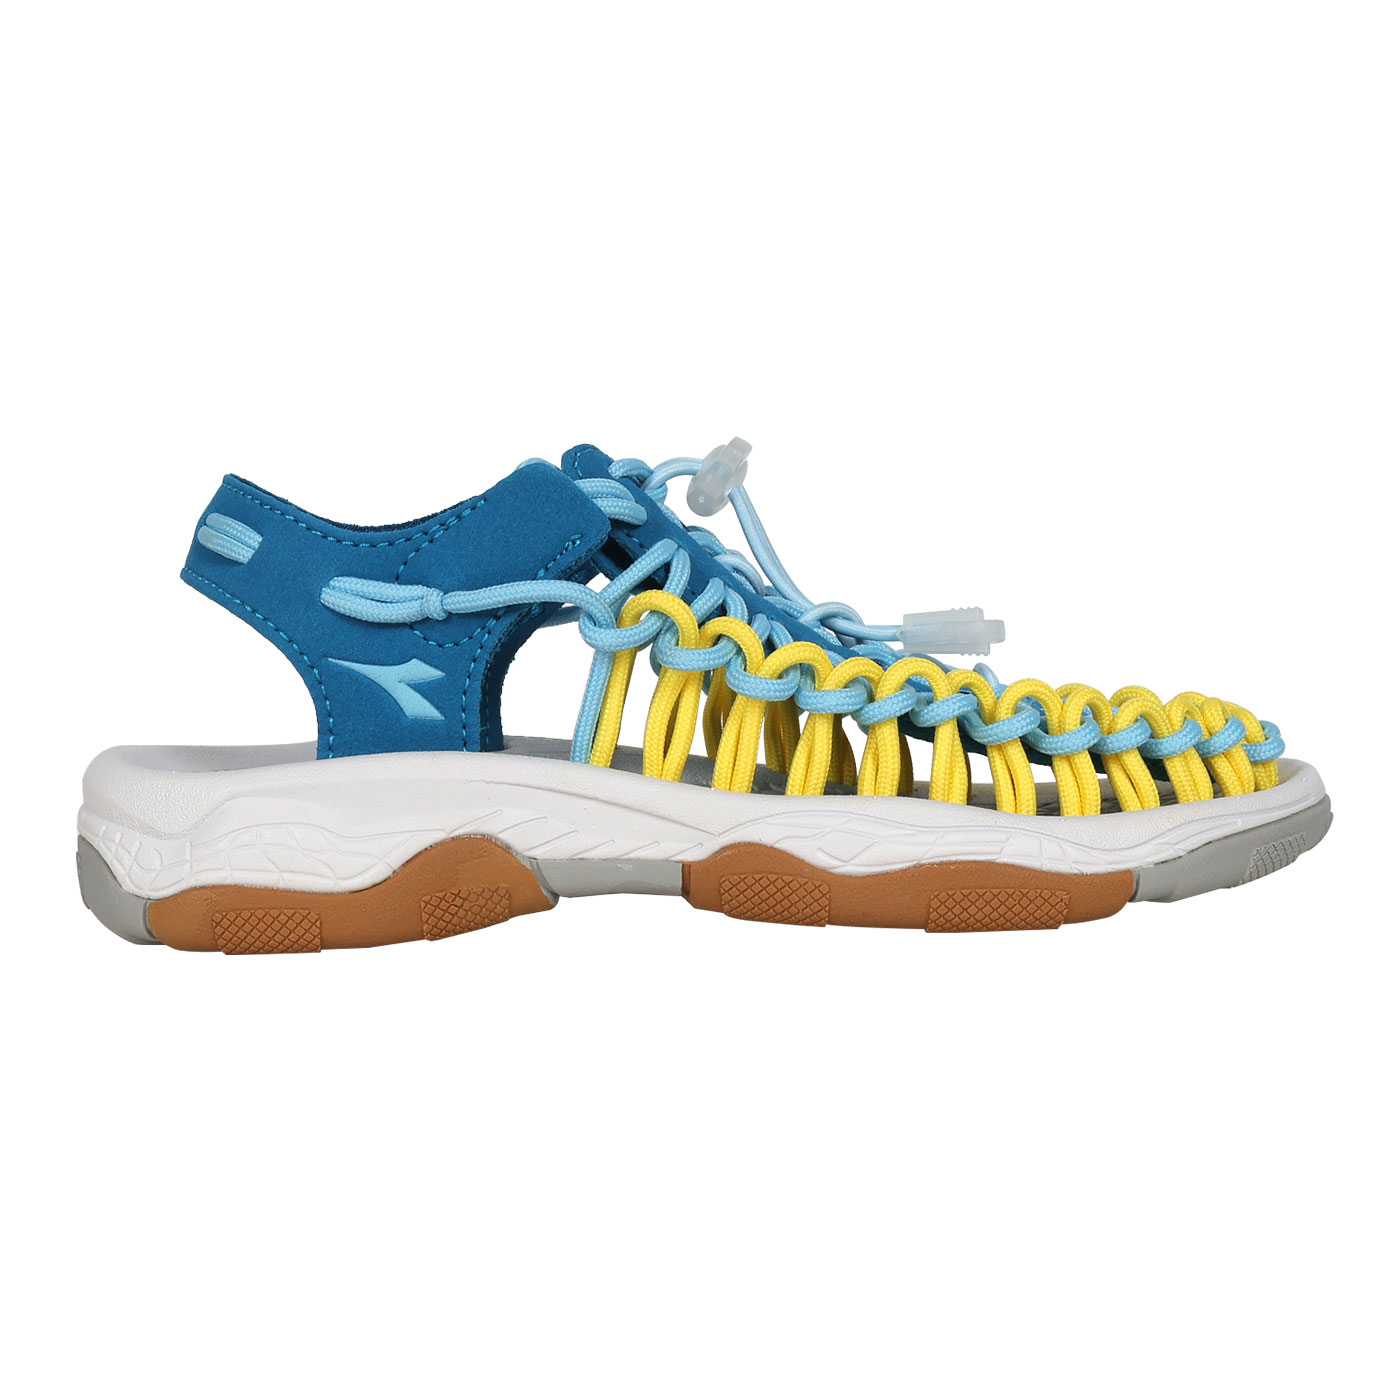 DIADORA 中童編織涼鞋  DA13136 - 深湖藍亮黃